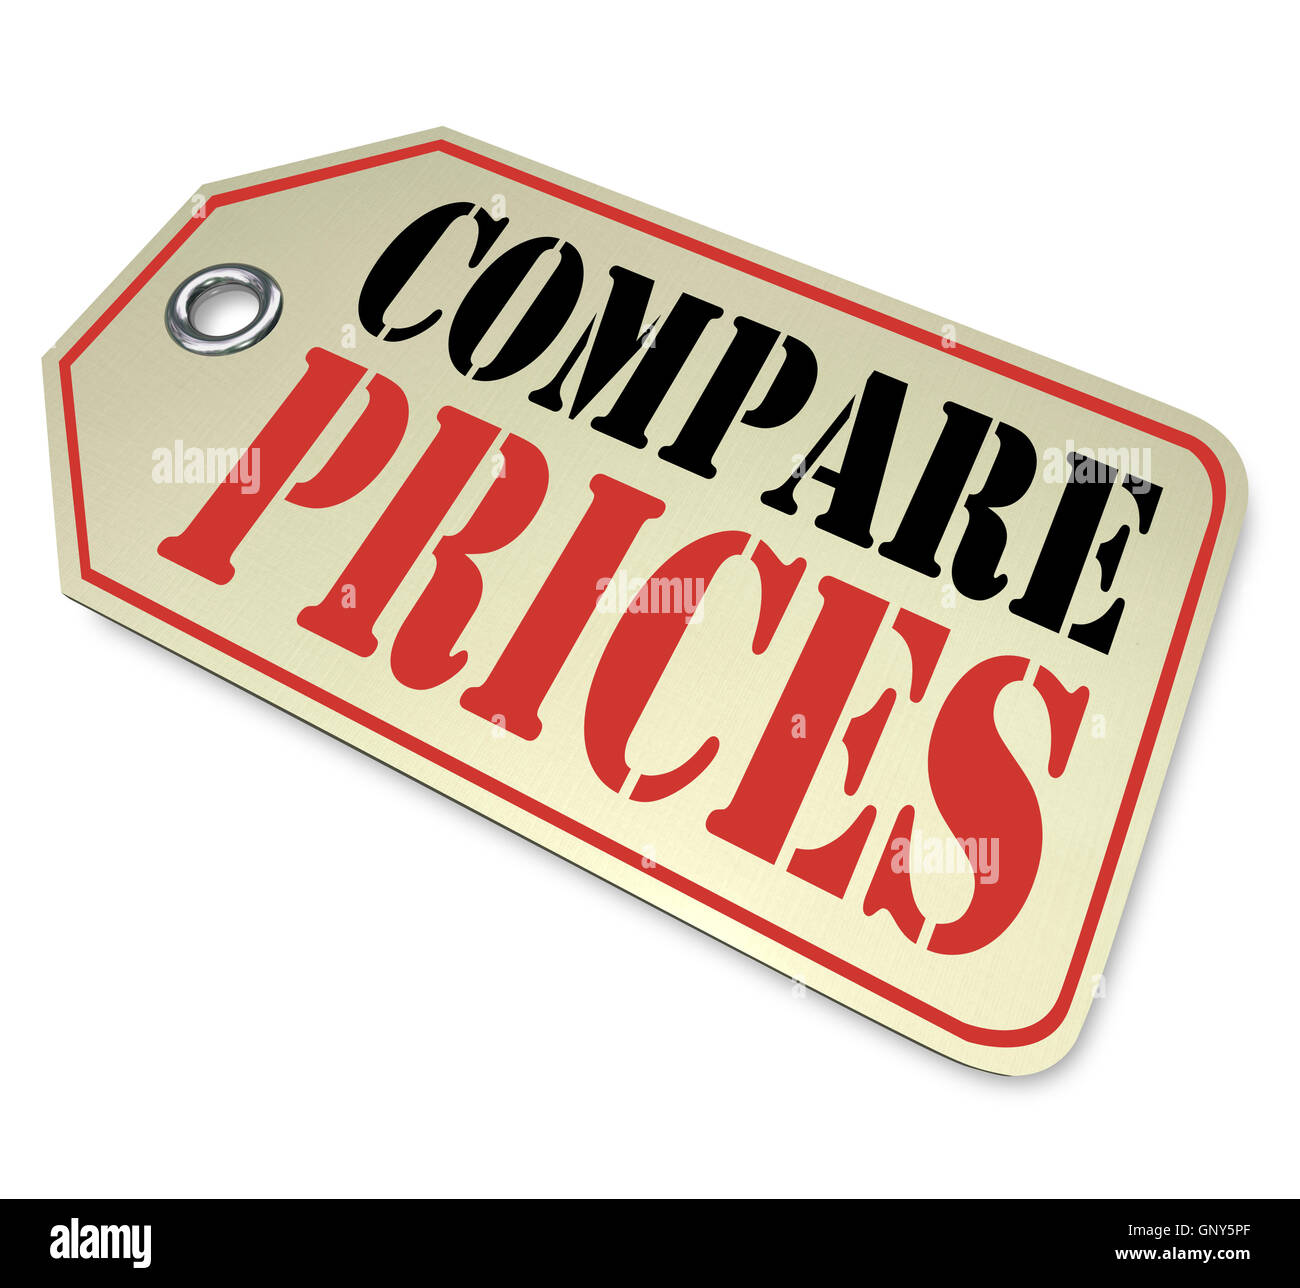 Comparer les prix d'achats de comparaison de prix variable Banque D'Images